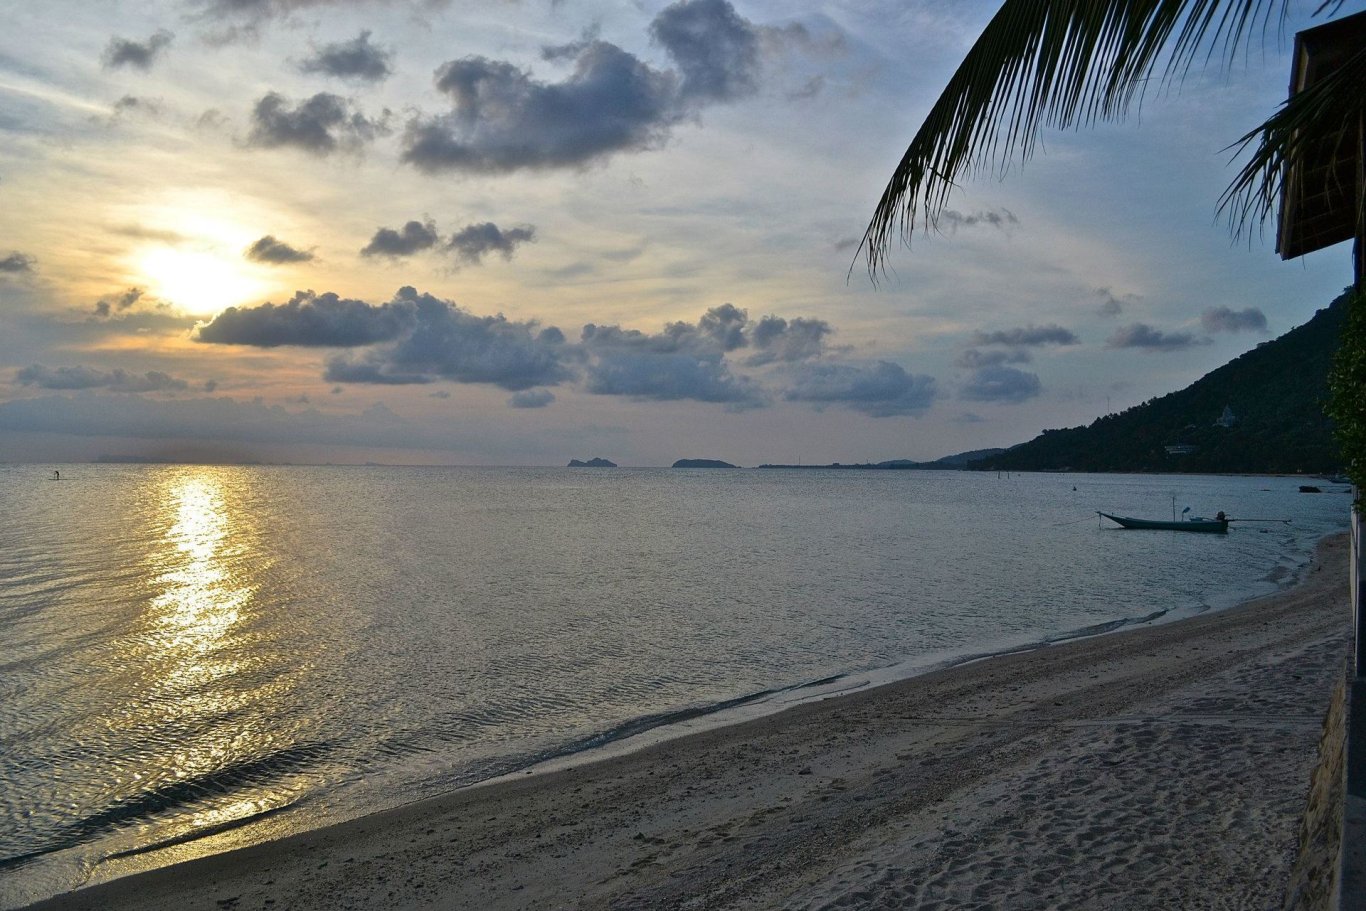 sunrise on the beach in thailand